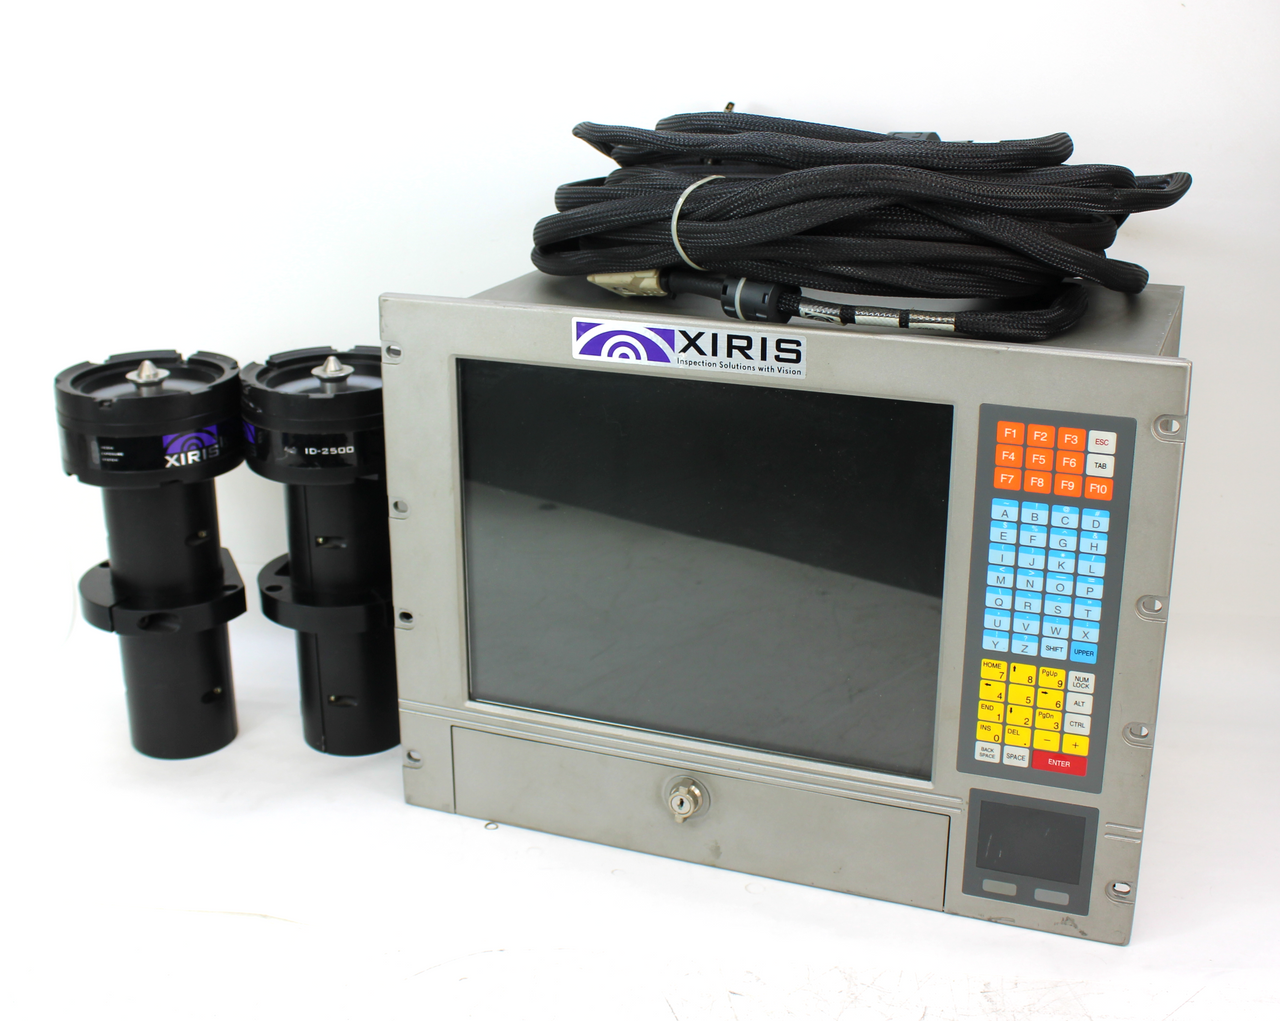 Xiris ID-2500 Code Verification System w/ Cameras